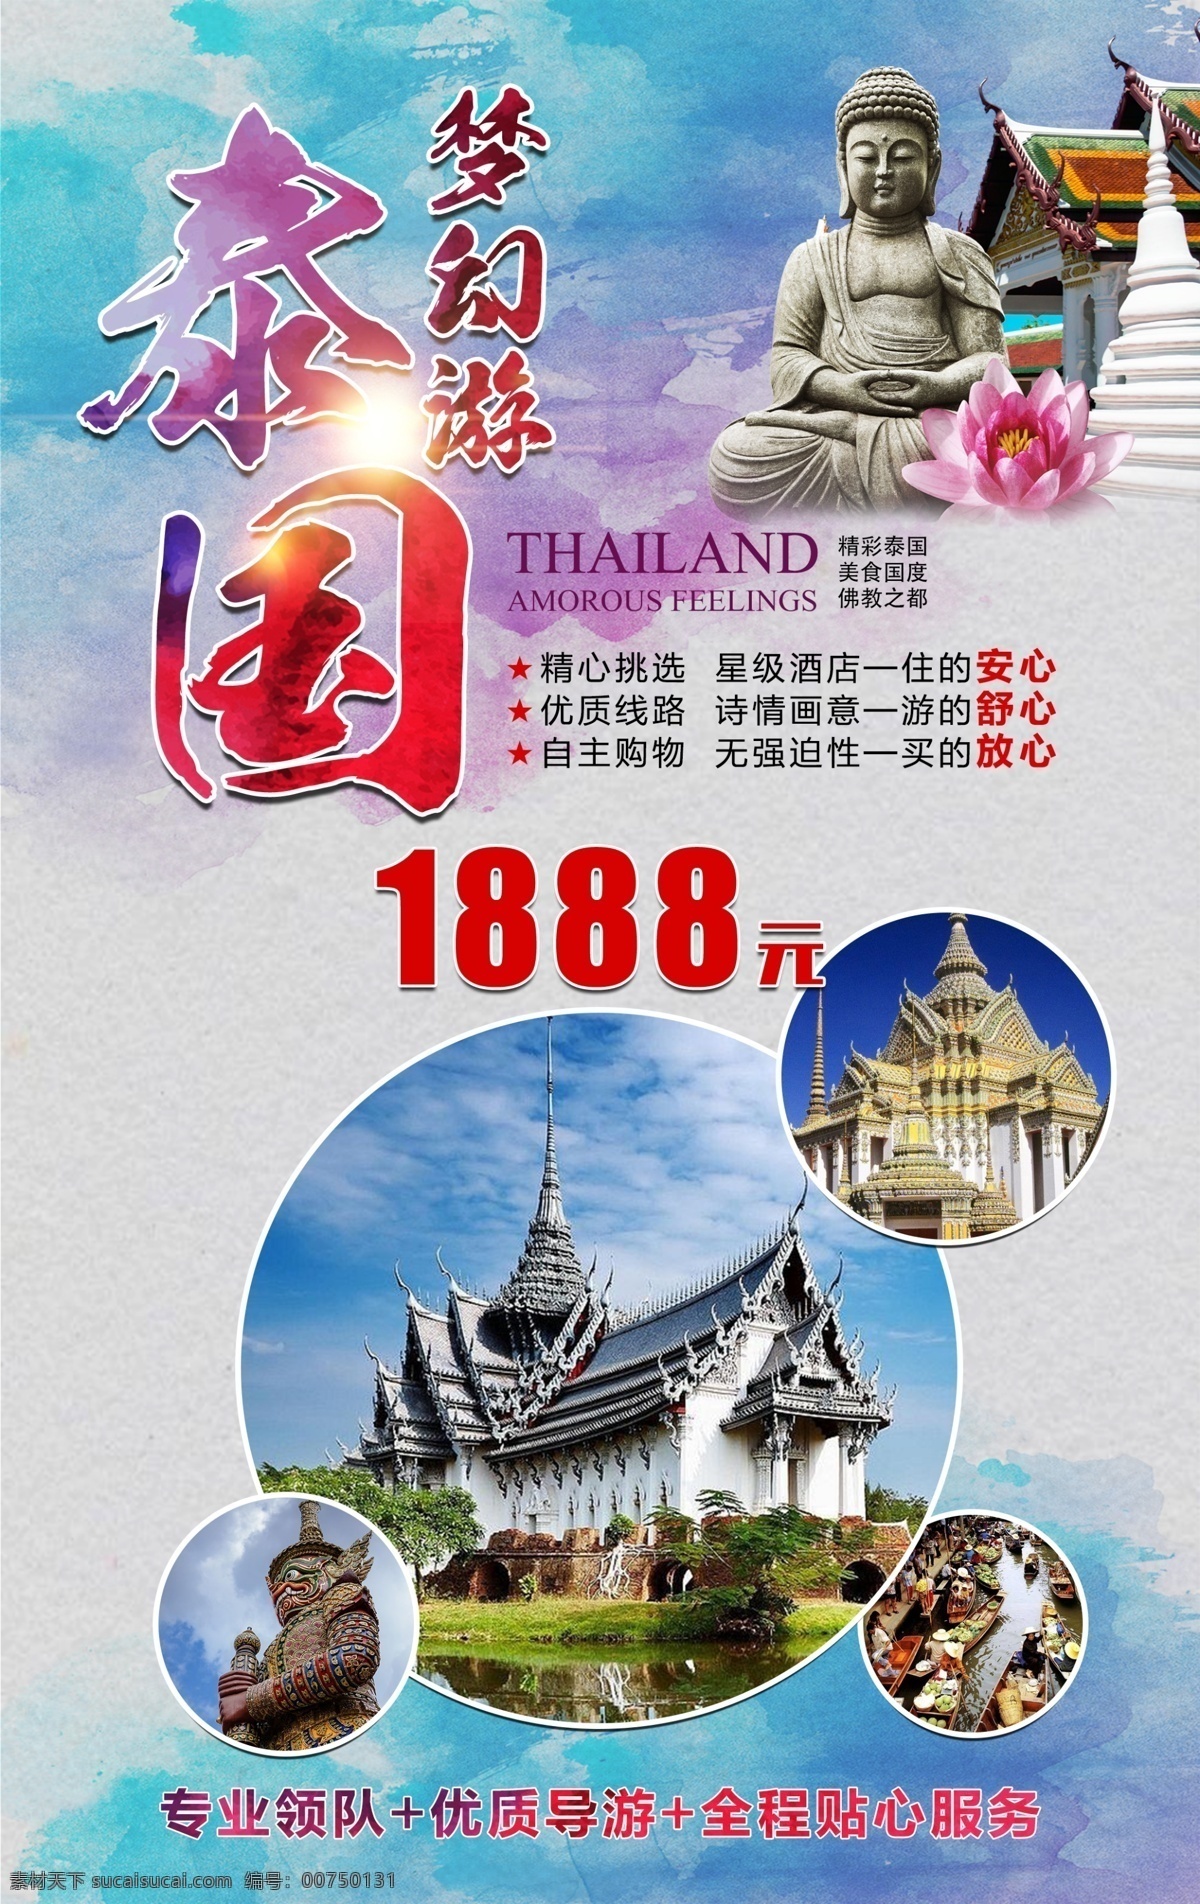 泰国旅游海报 泰国 寺庙 佛像 彩色水墨 旅游 十一放假游 新马泰 春节旅游 海报 节日出游